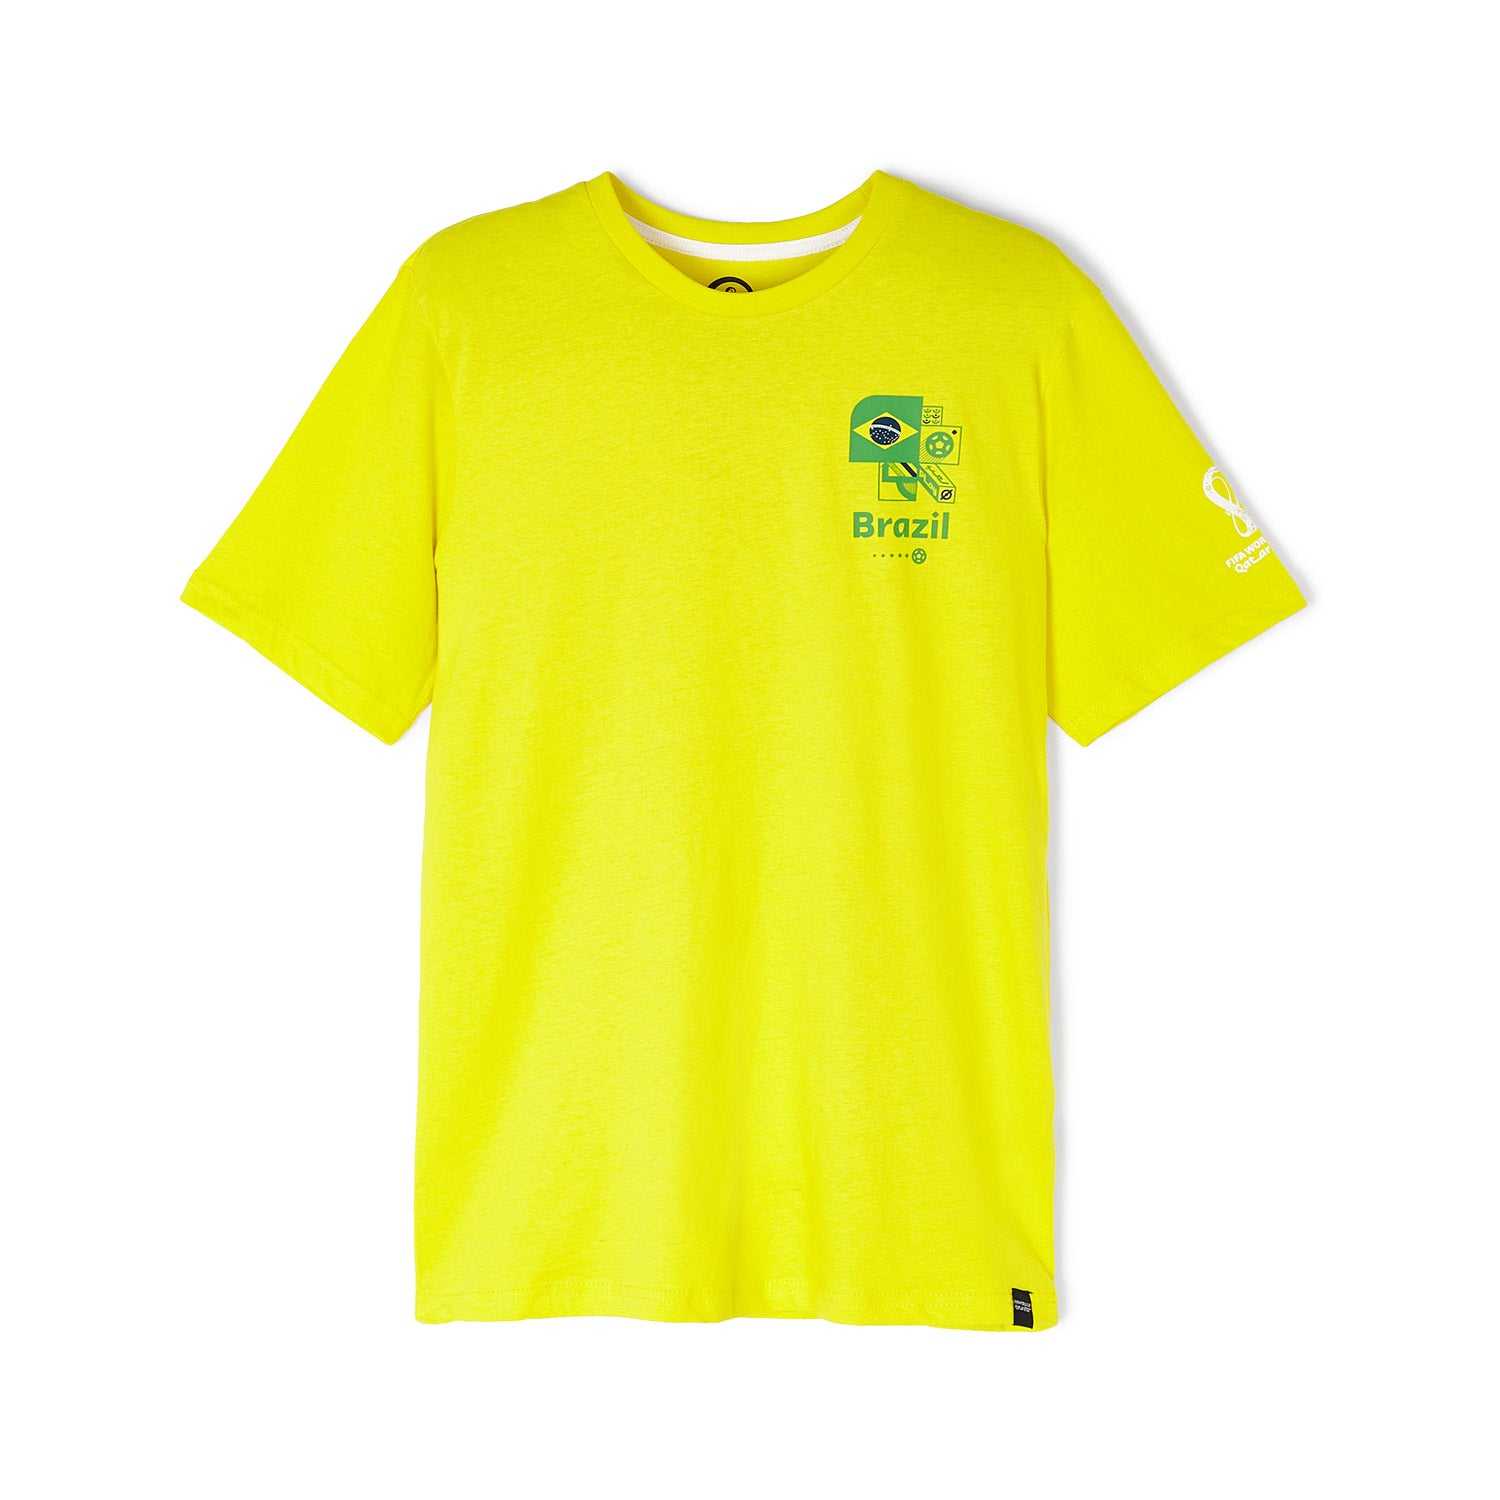 2022 World Cup Brazil Yellow T-Shirt - Men's